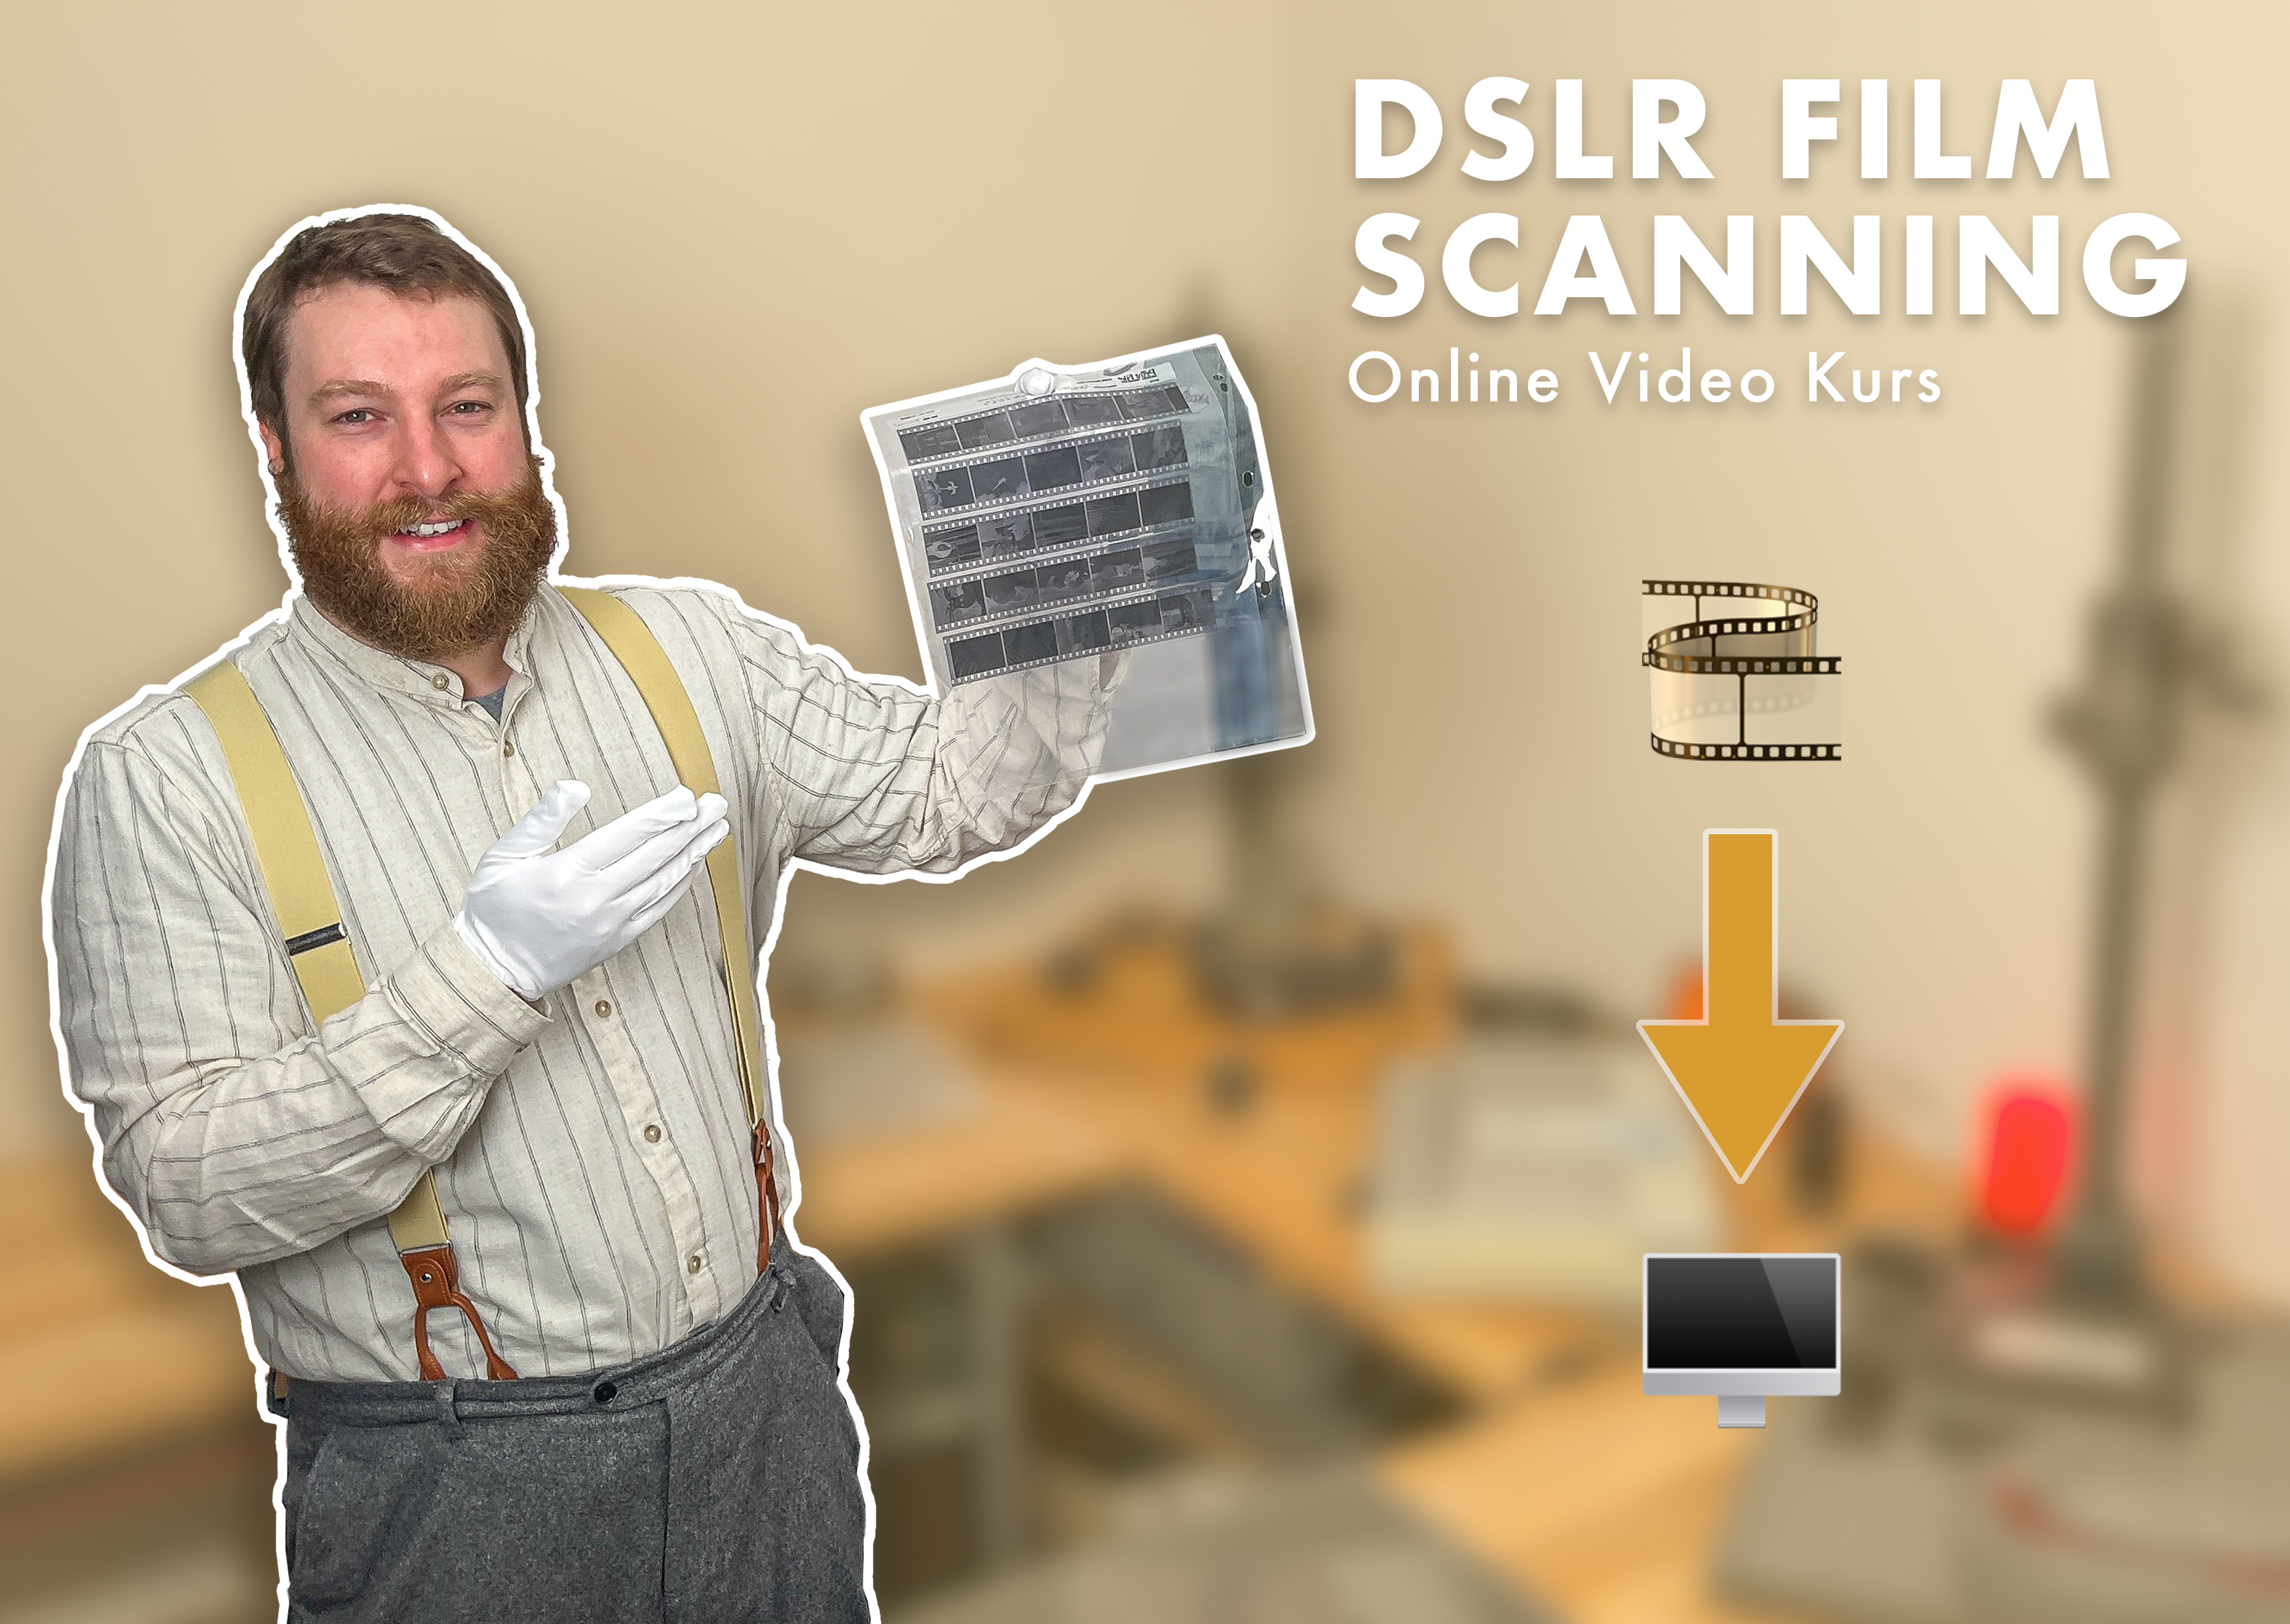 DSLR Film Scanning Online Video Kurs